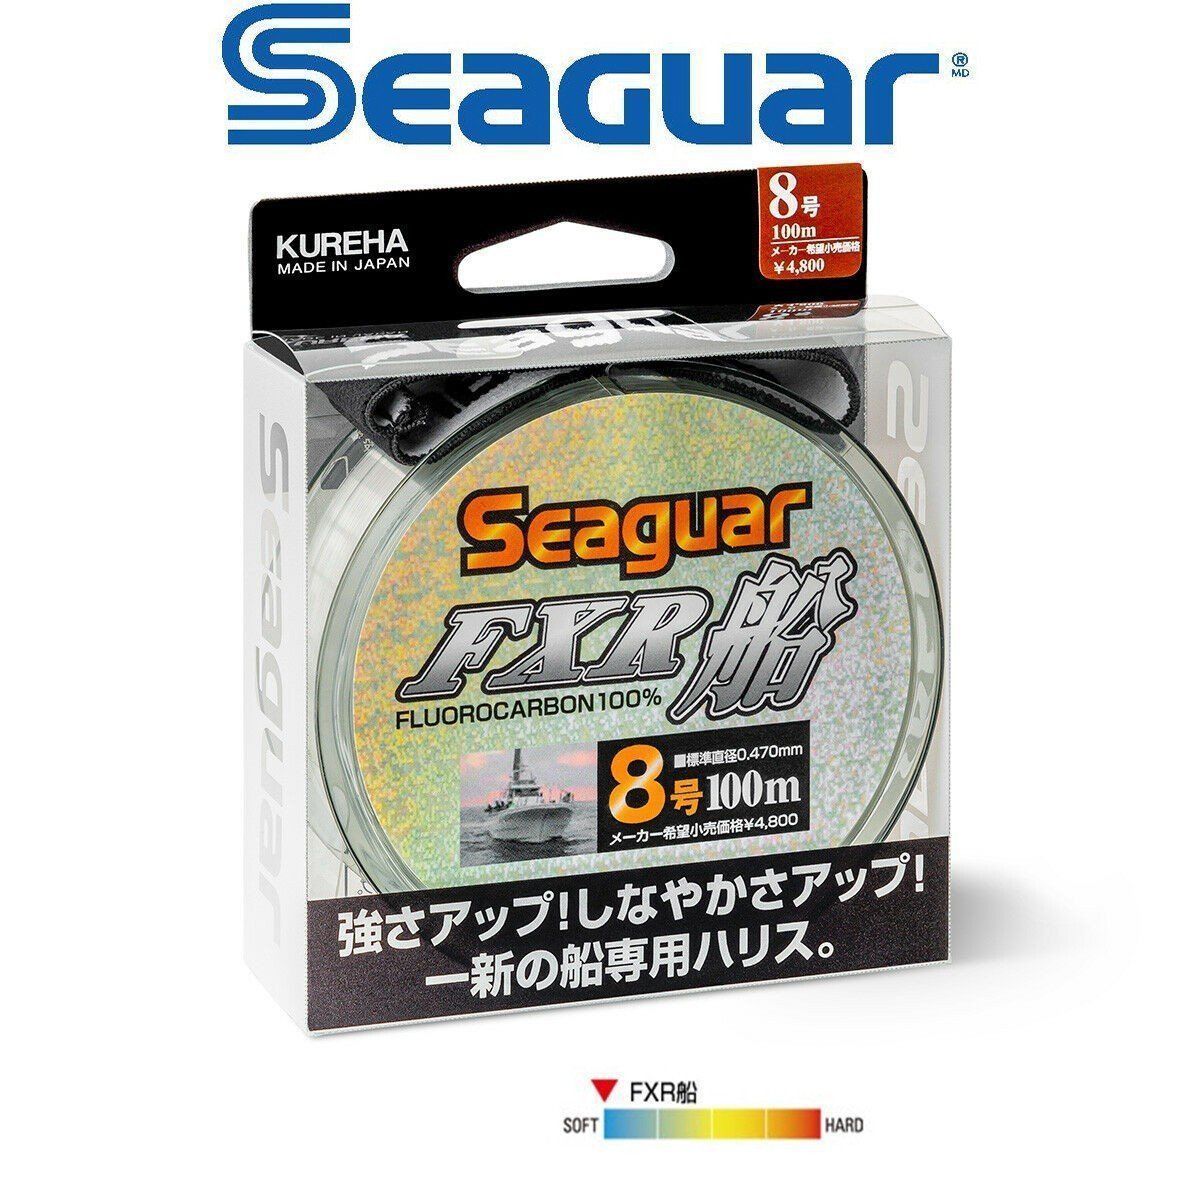 Seaguar FXR Fune %100 Fluoro Carbon Misina 100mt 0.330 mm